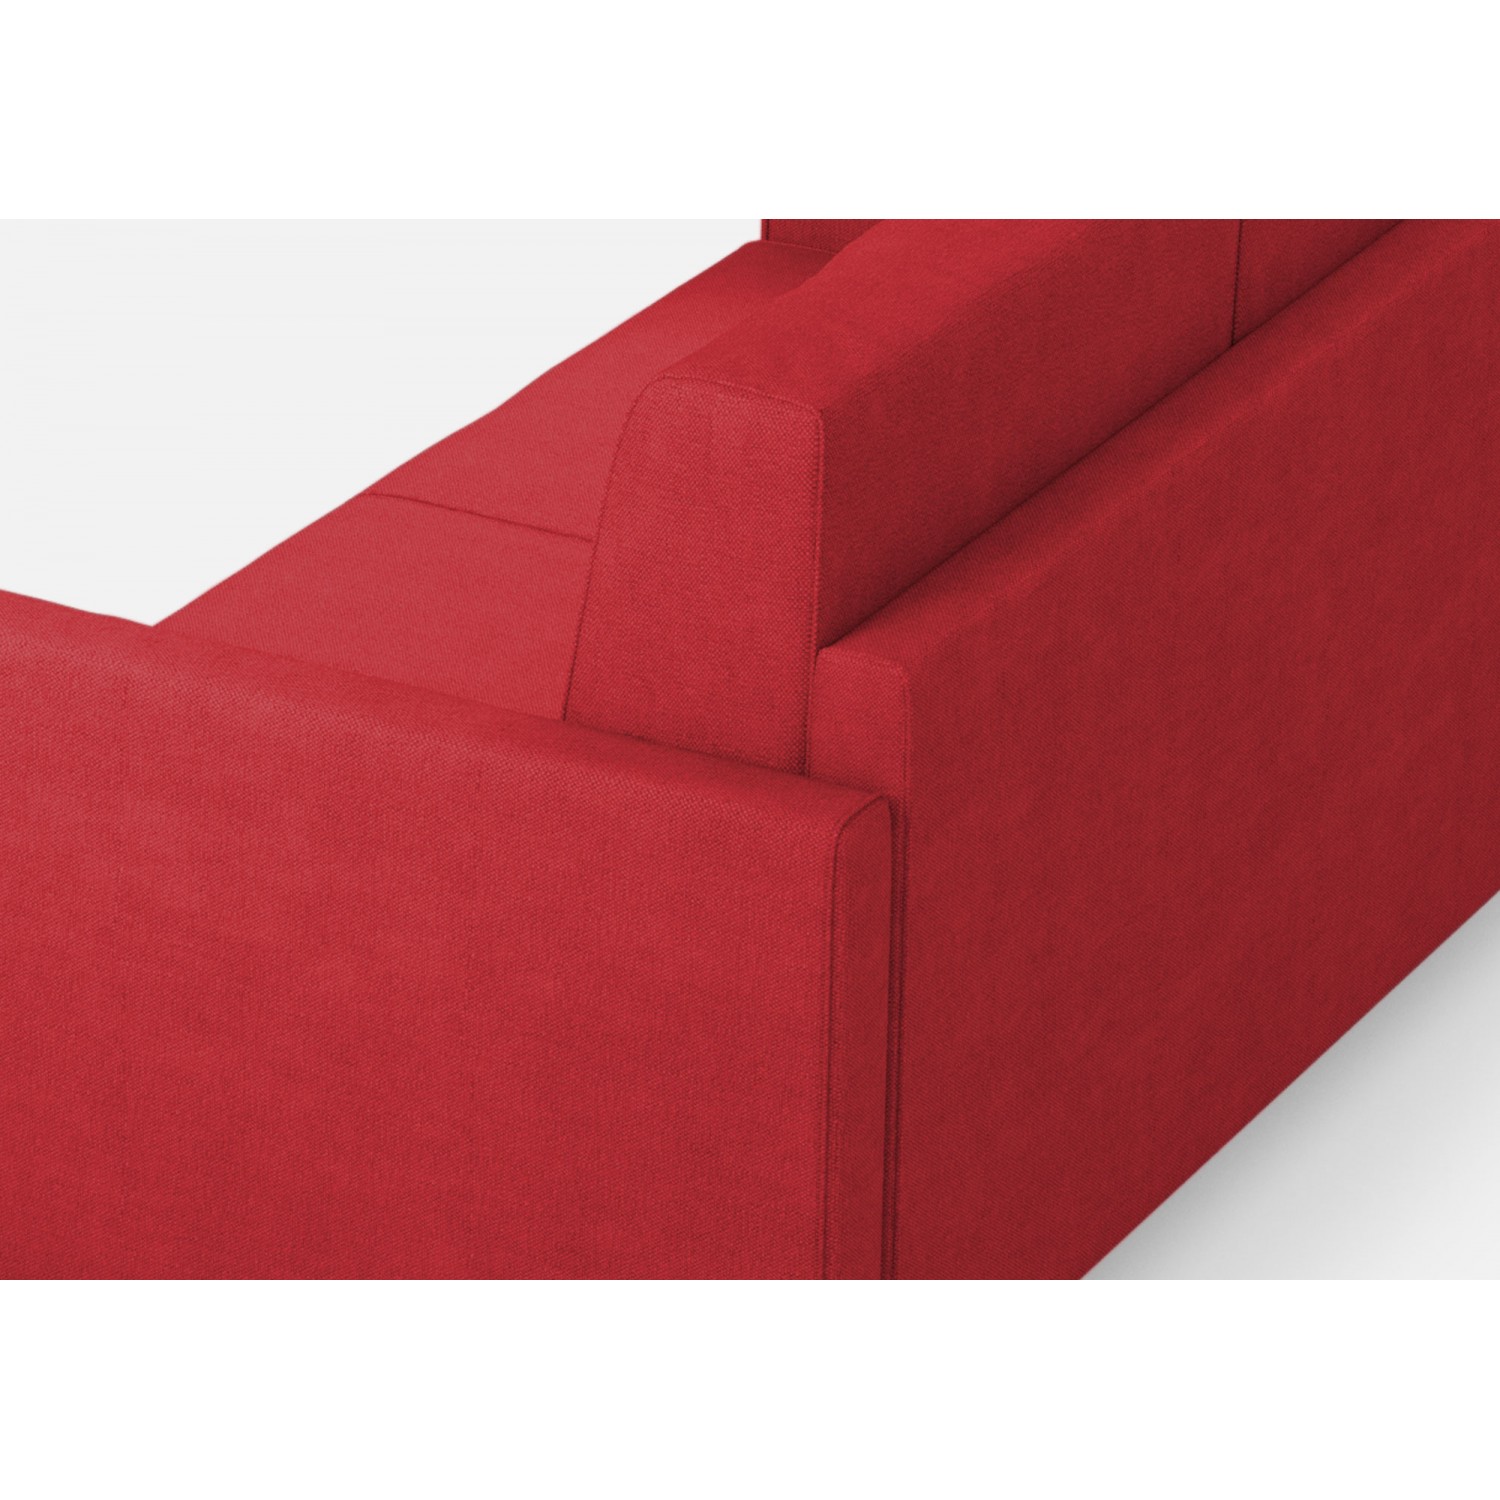 Ityhome Divano Karay 3 posti  (tre sedute da 60cm) + angolo + divano 2 posti( due sedute da 60cm) misure esterne L.281x221 colore rosso